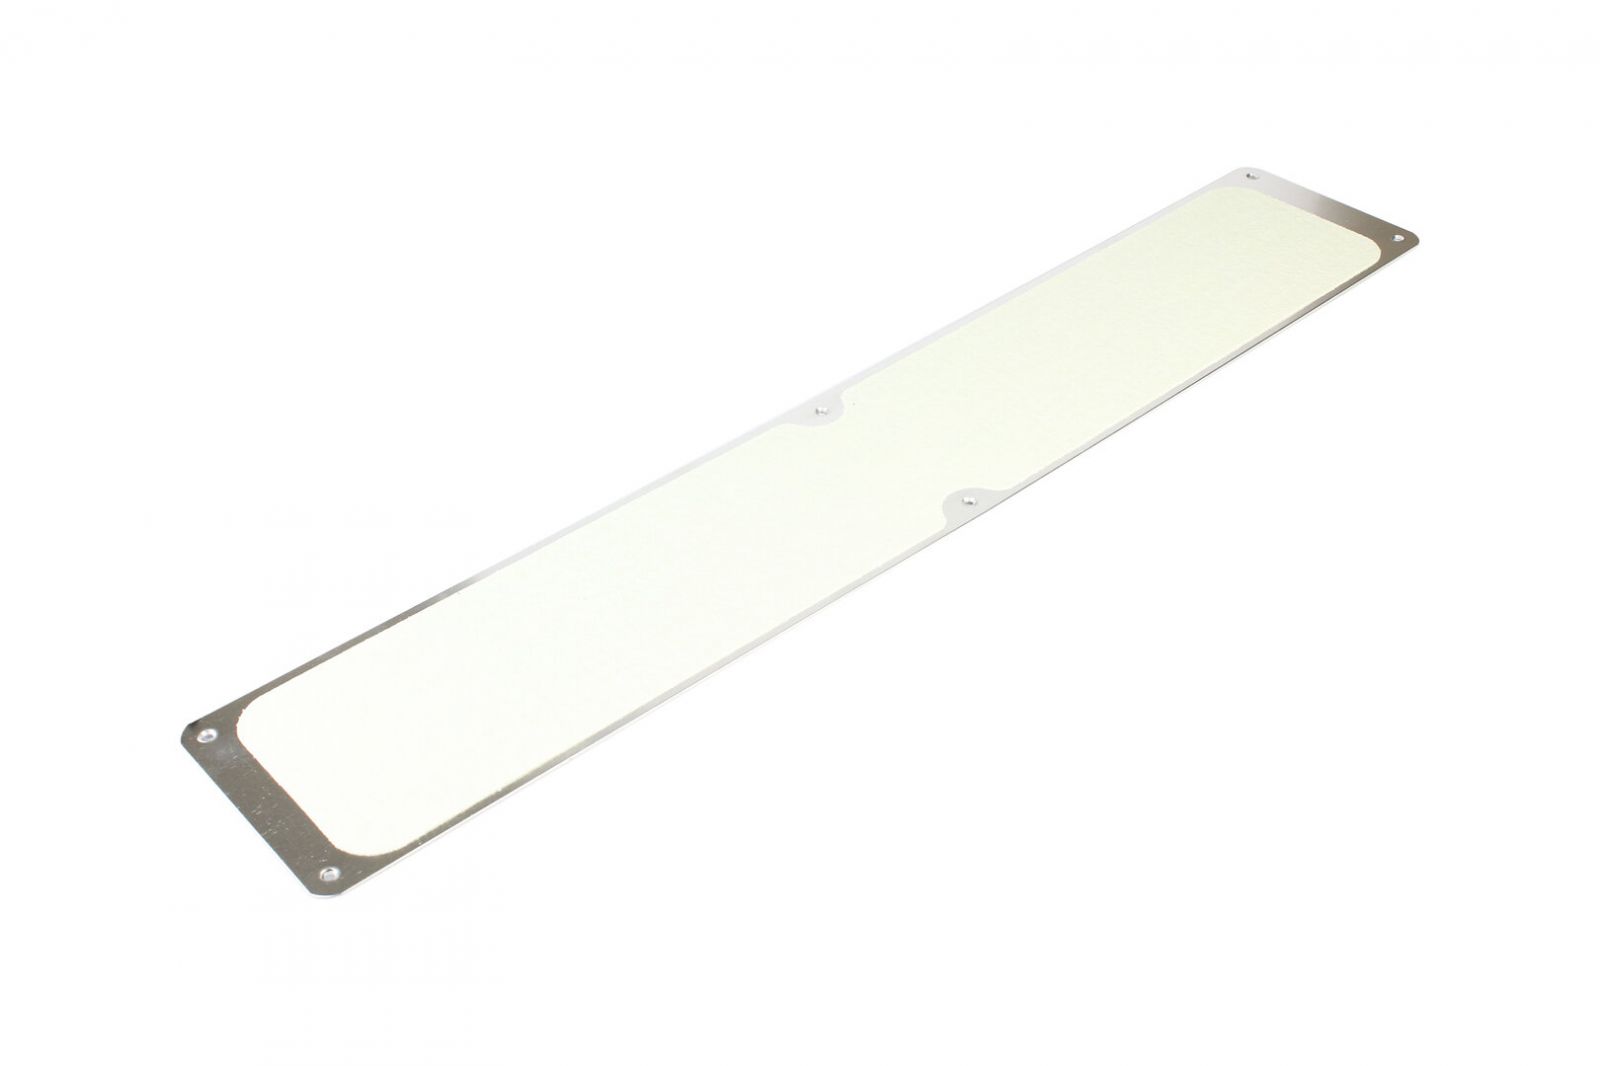 Žlutá náhradní protiskluzová páska pro hliníkové nášlapy FLOMA Standard - délka 63,5 cm, šířka 11,5 cm, tloušťka 0,7 mm